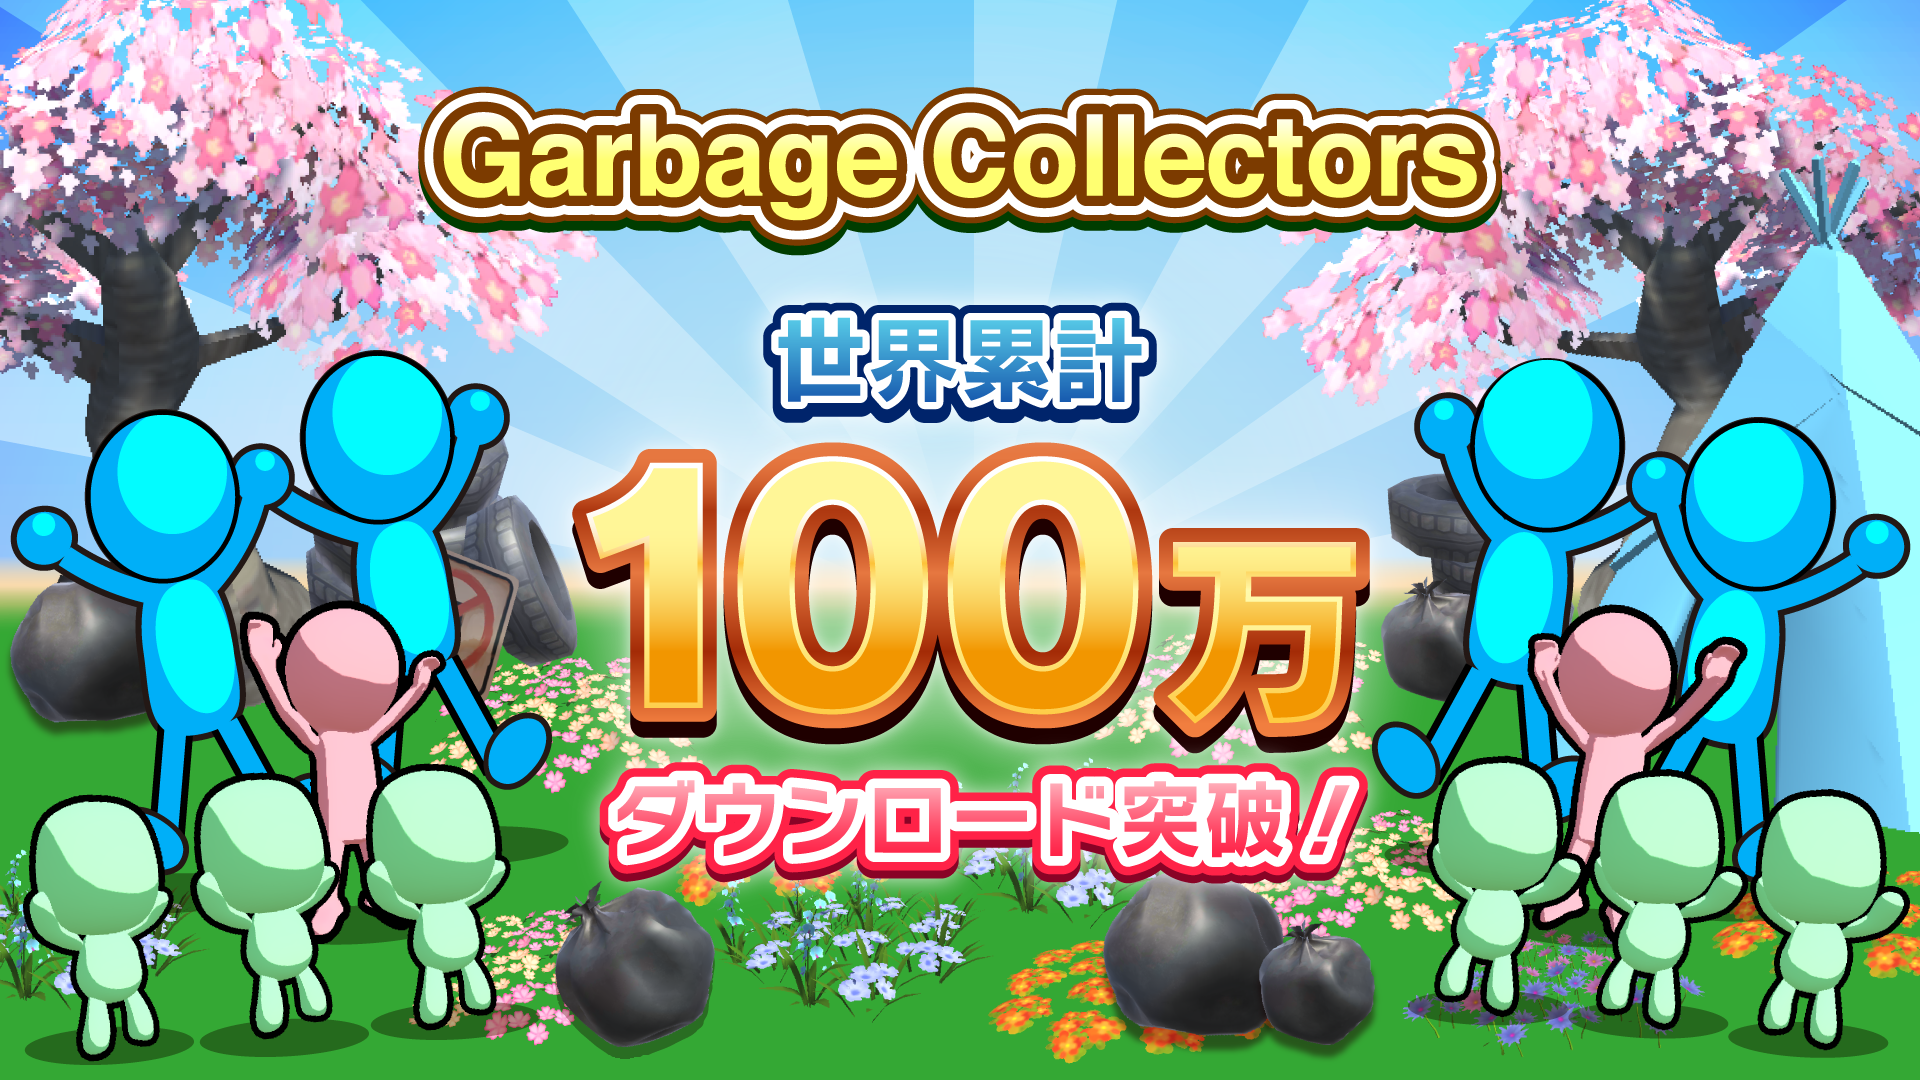 DONUTS×タツマキゲームズ共同開発のハイブリッドカジュアルゲーム「Garbage Collectors」世界累計100万DLを突破！